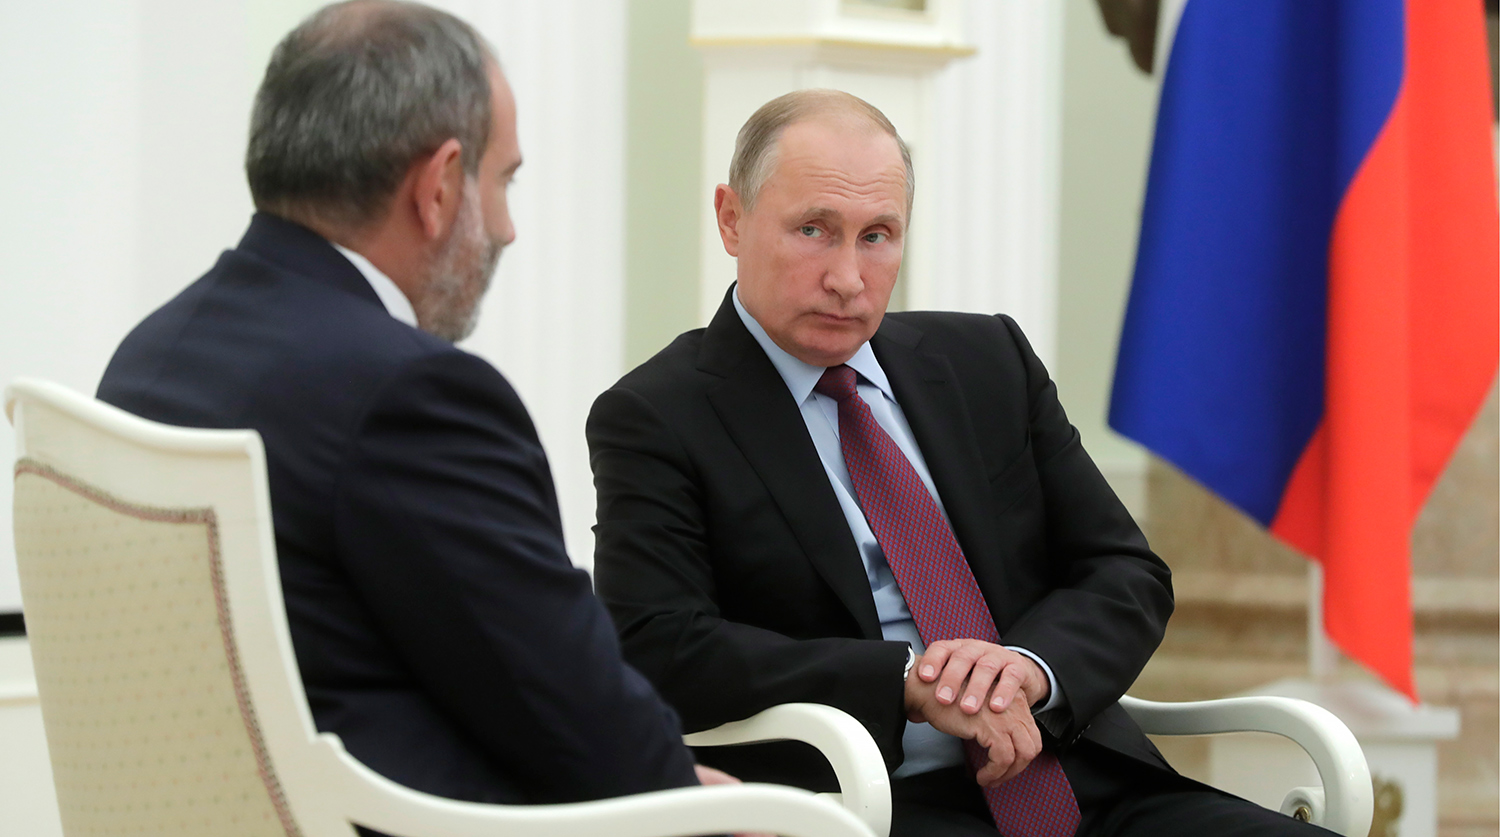 Пашинян сообщил Путину о решении обратиться в ОДКБ из-за вторжения азербайджанских войск